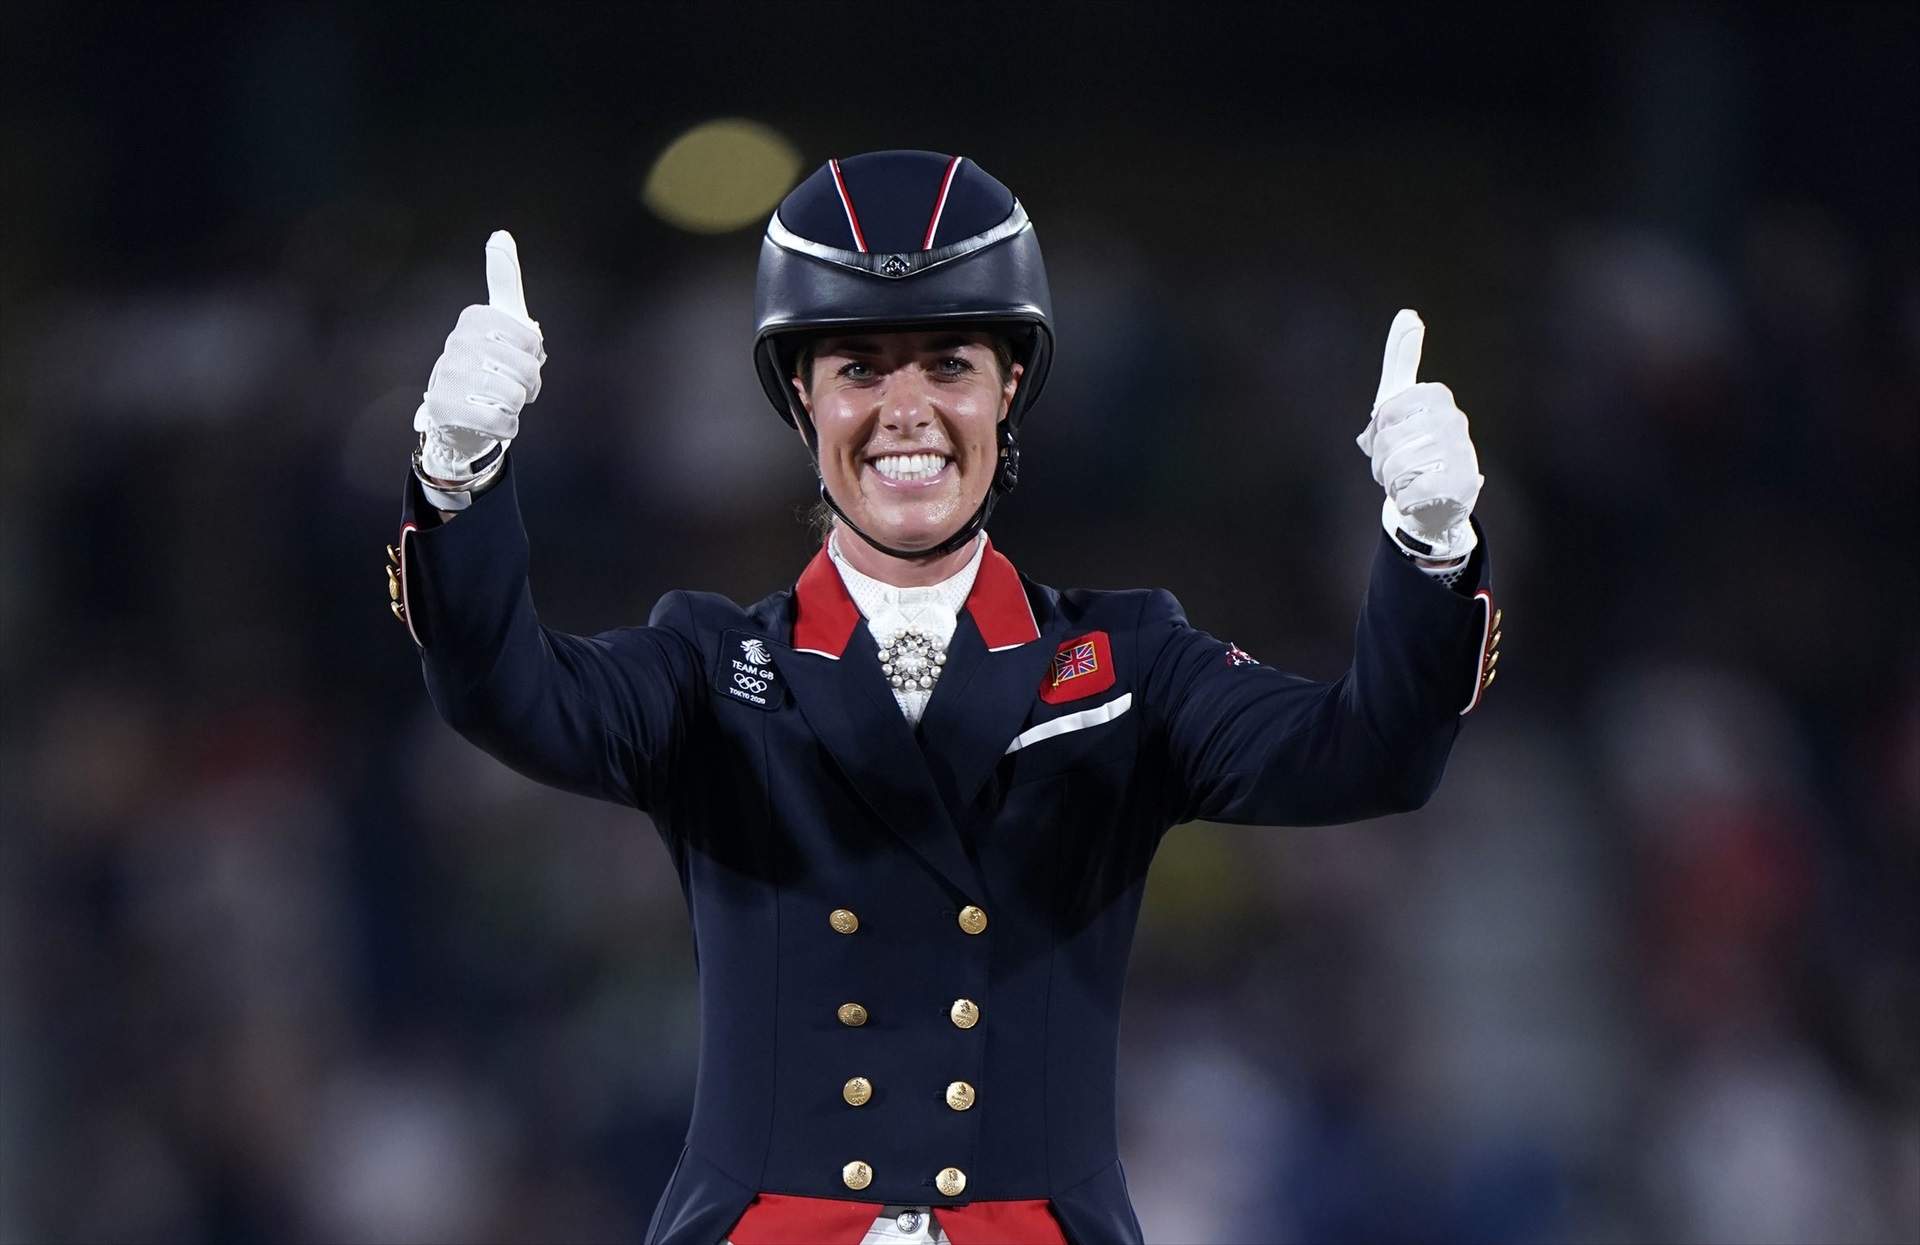 La jinete británica Charlotte Dujardin, fuera de los Juegos Olímpicos por azotar a un caballo